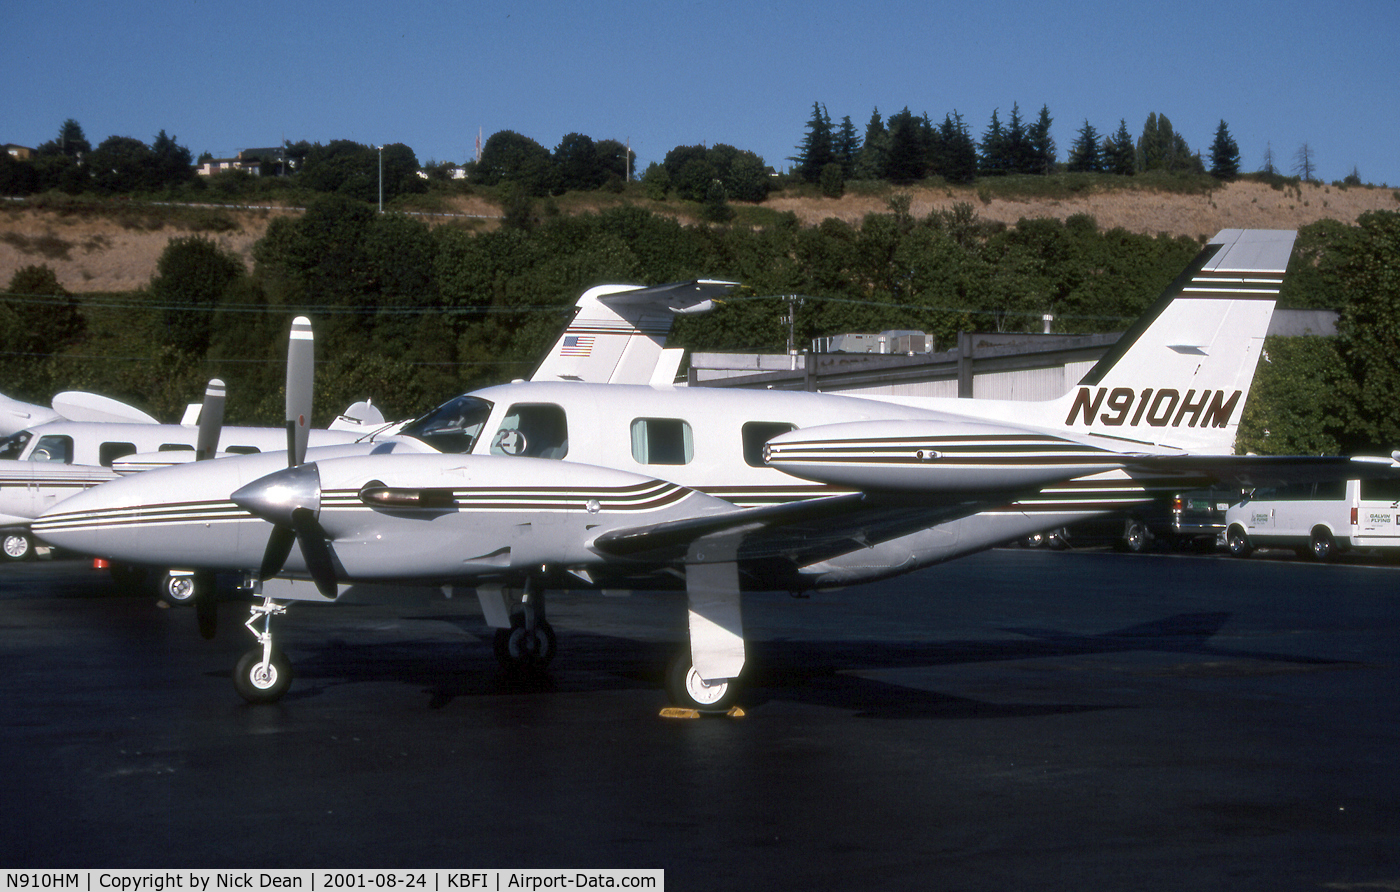 N910HM, 1983 Piper PA-31T1-500 Cheyenne IA C/N 31T-8304002, KBFI